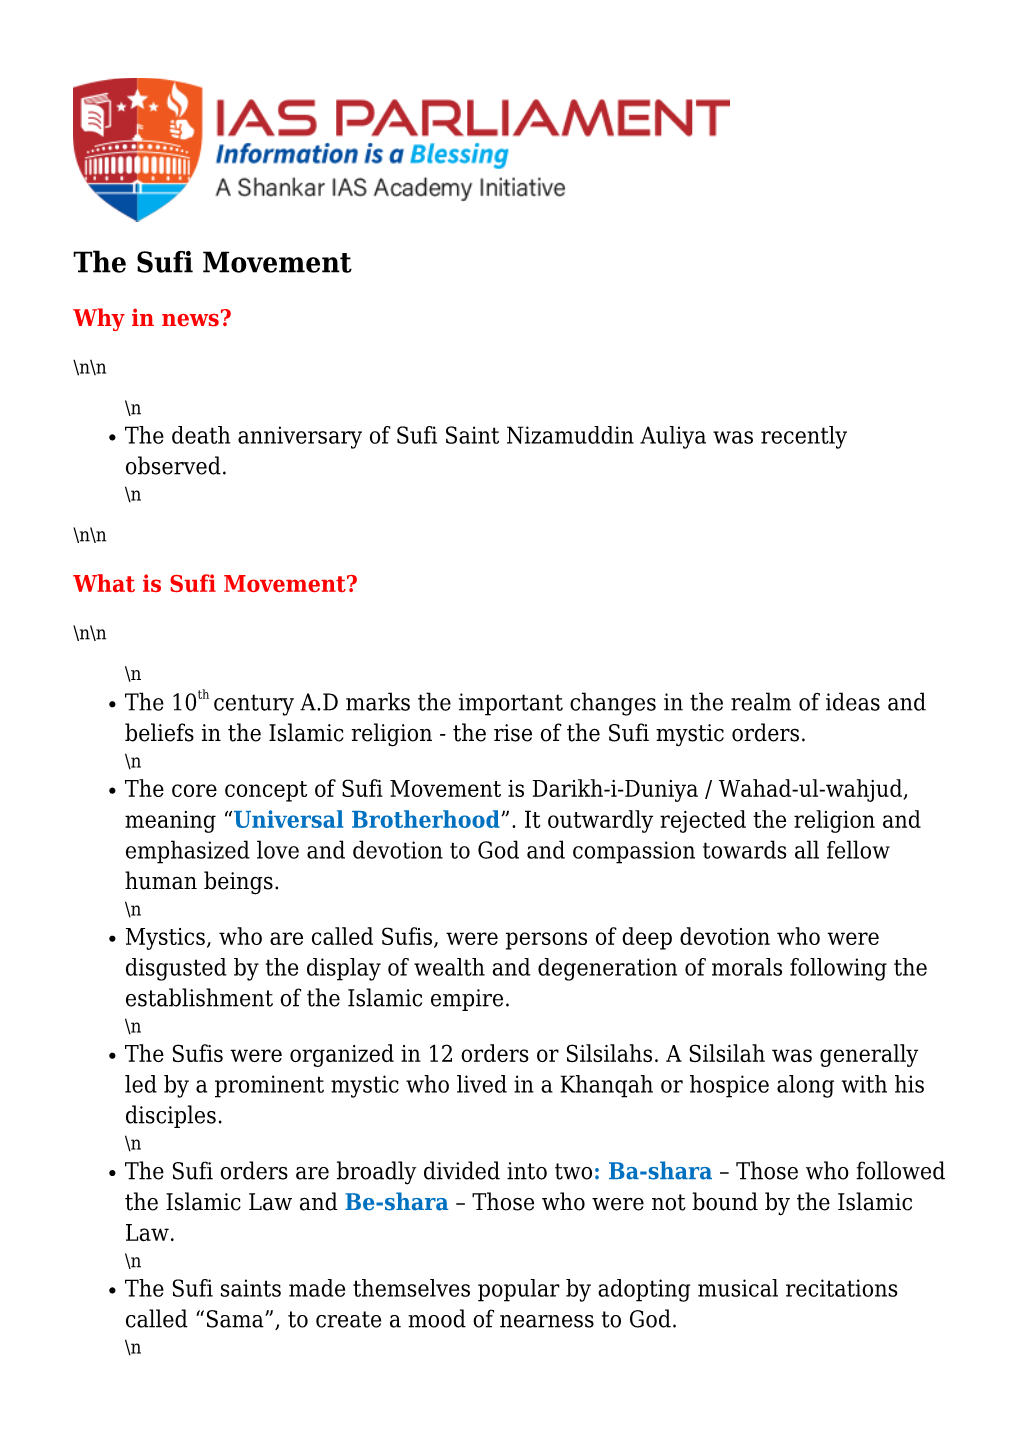 The Sufi Movement